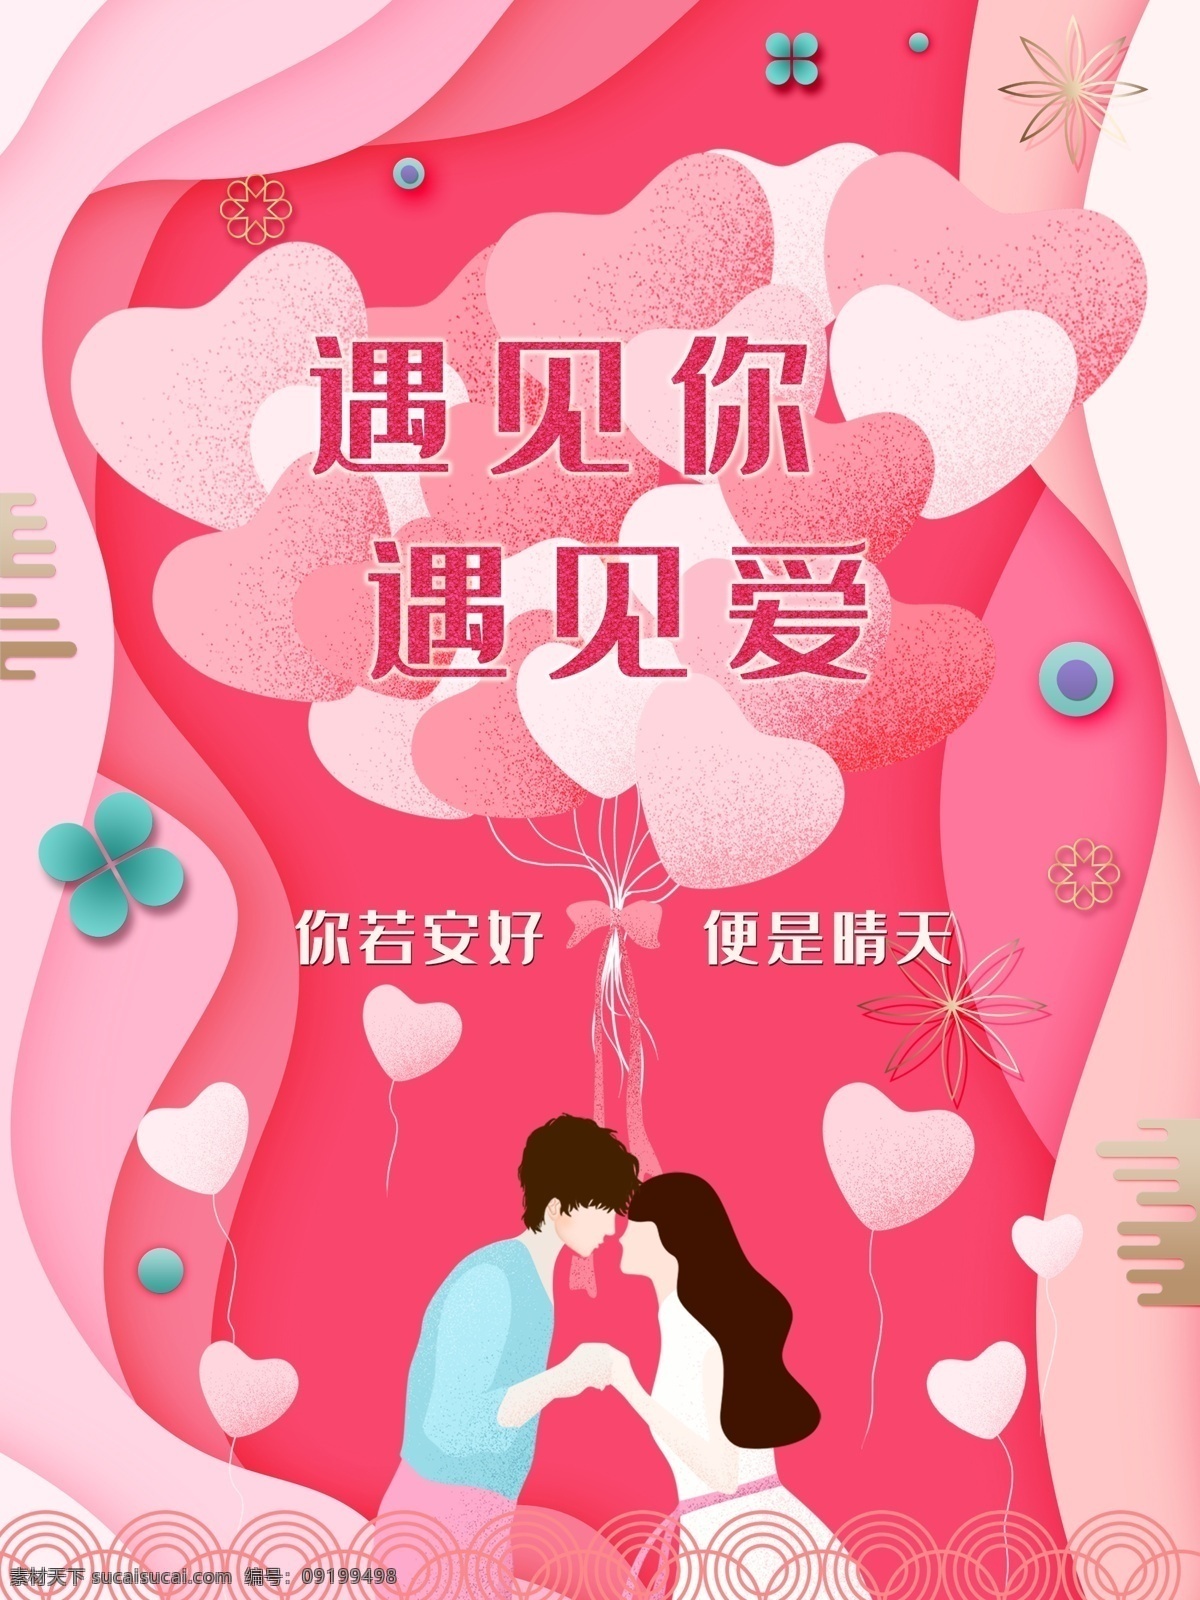 粉红 浪漫 爱情 情人节 海报 520 表白 粉色 婚礼 婚庆 结婚 卡通 可爱 恋爱